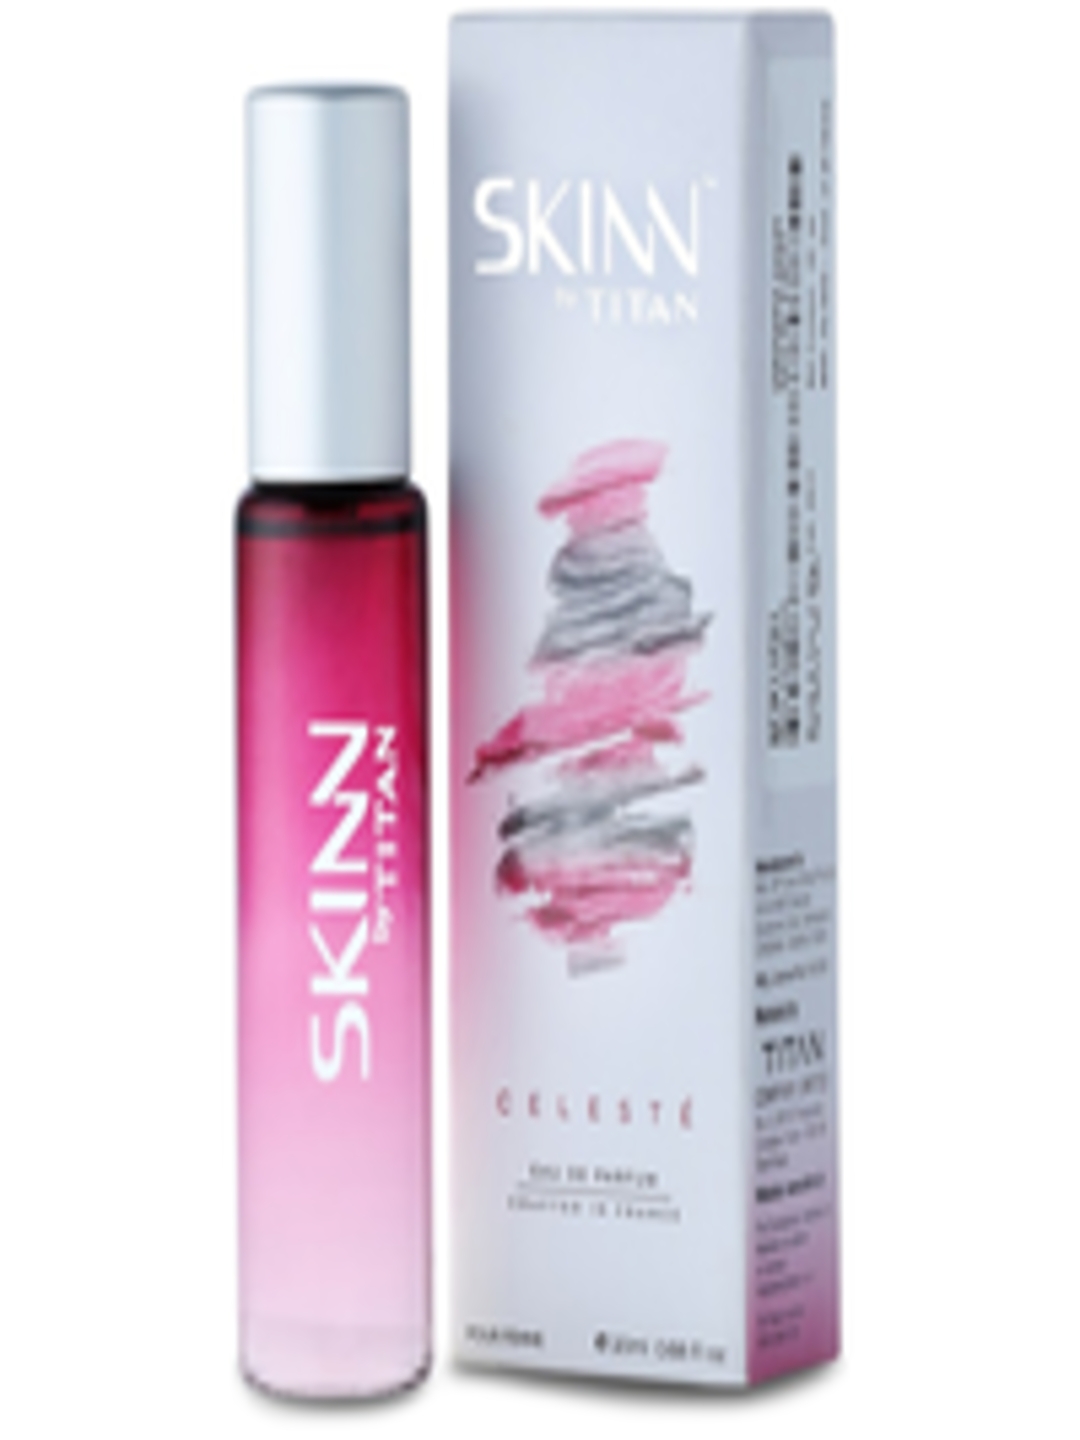 Buy online Skinn By Titan Pristine Edp For Women, 20 Ml 